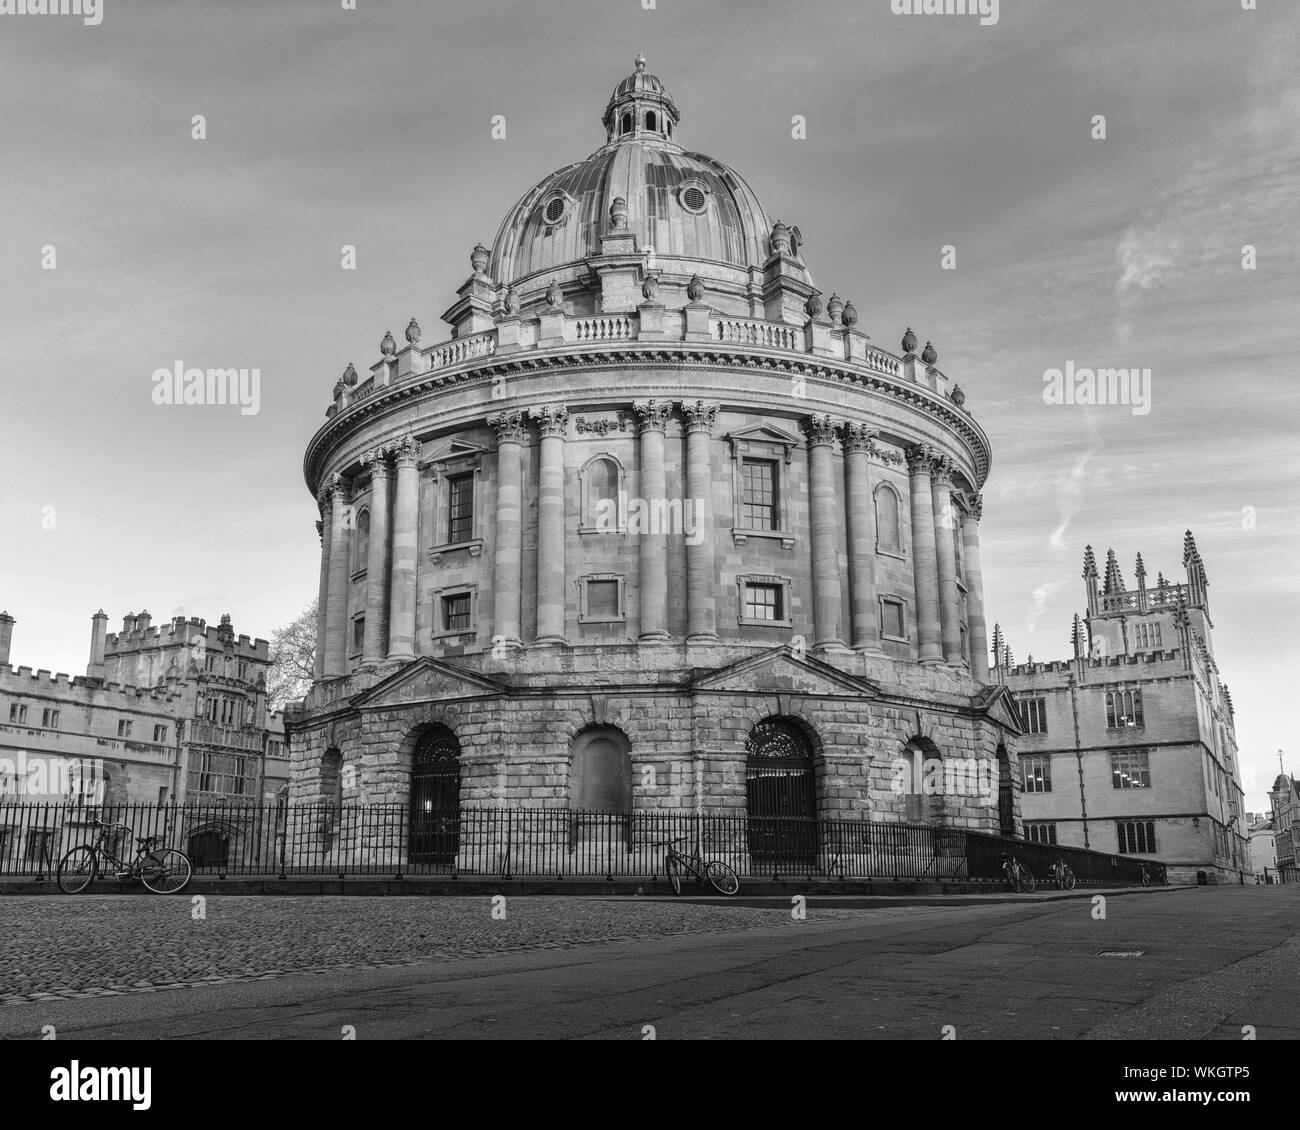 Die Radcliffe Camera liegt im Herzen von Oxford gelegen, steht hinter der alten Bodleian Library. Hier sehen Sie, wie die Sonne steigt. Stockfoto